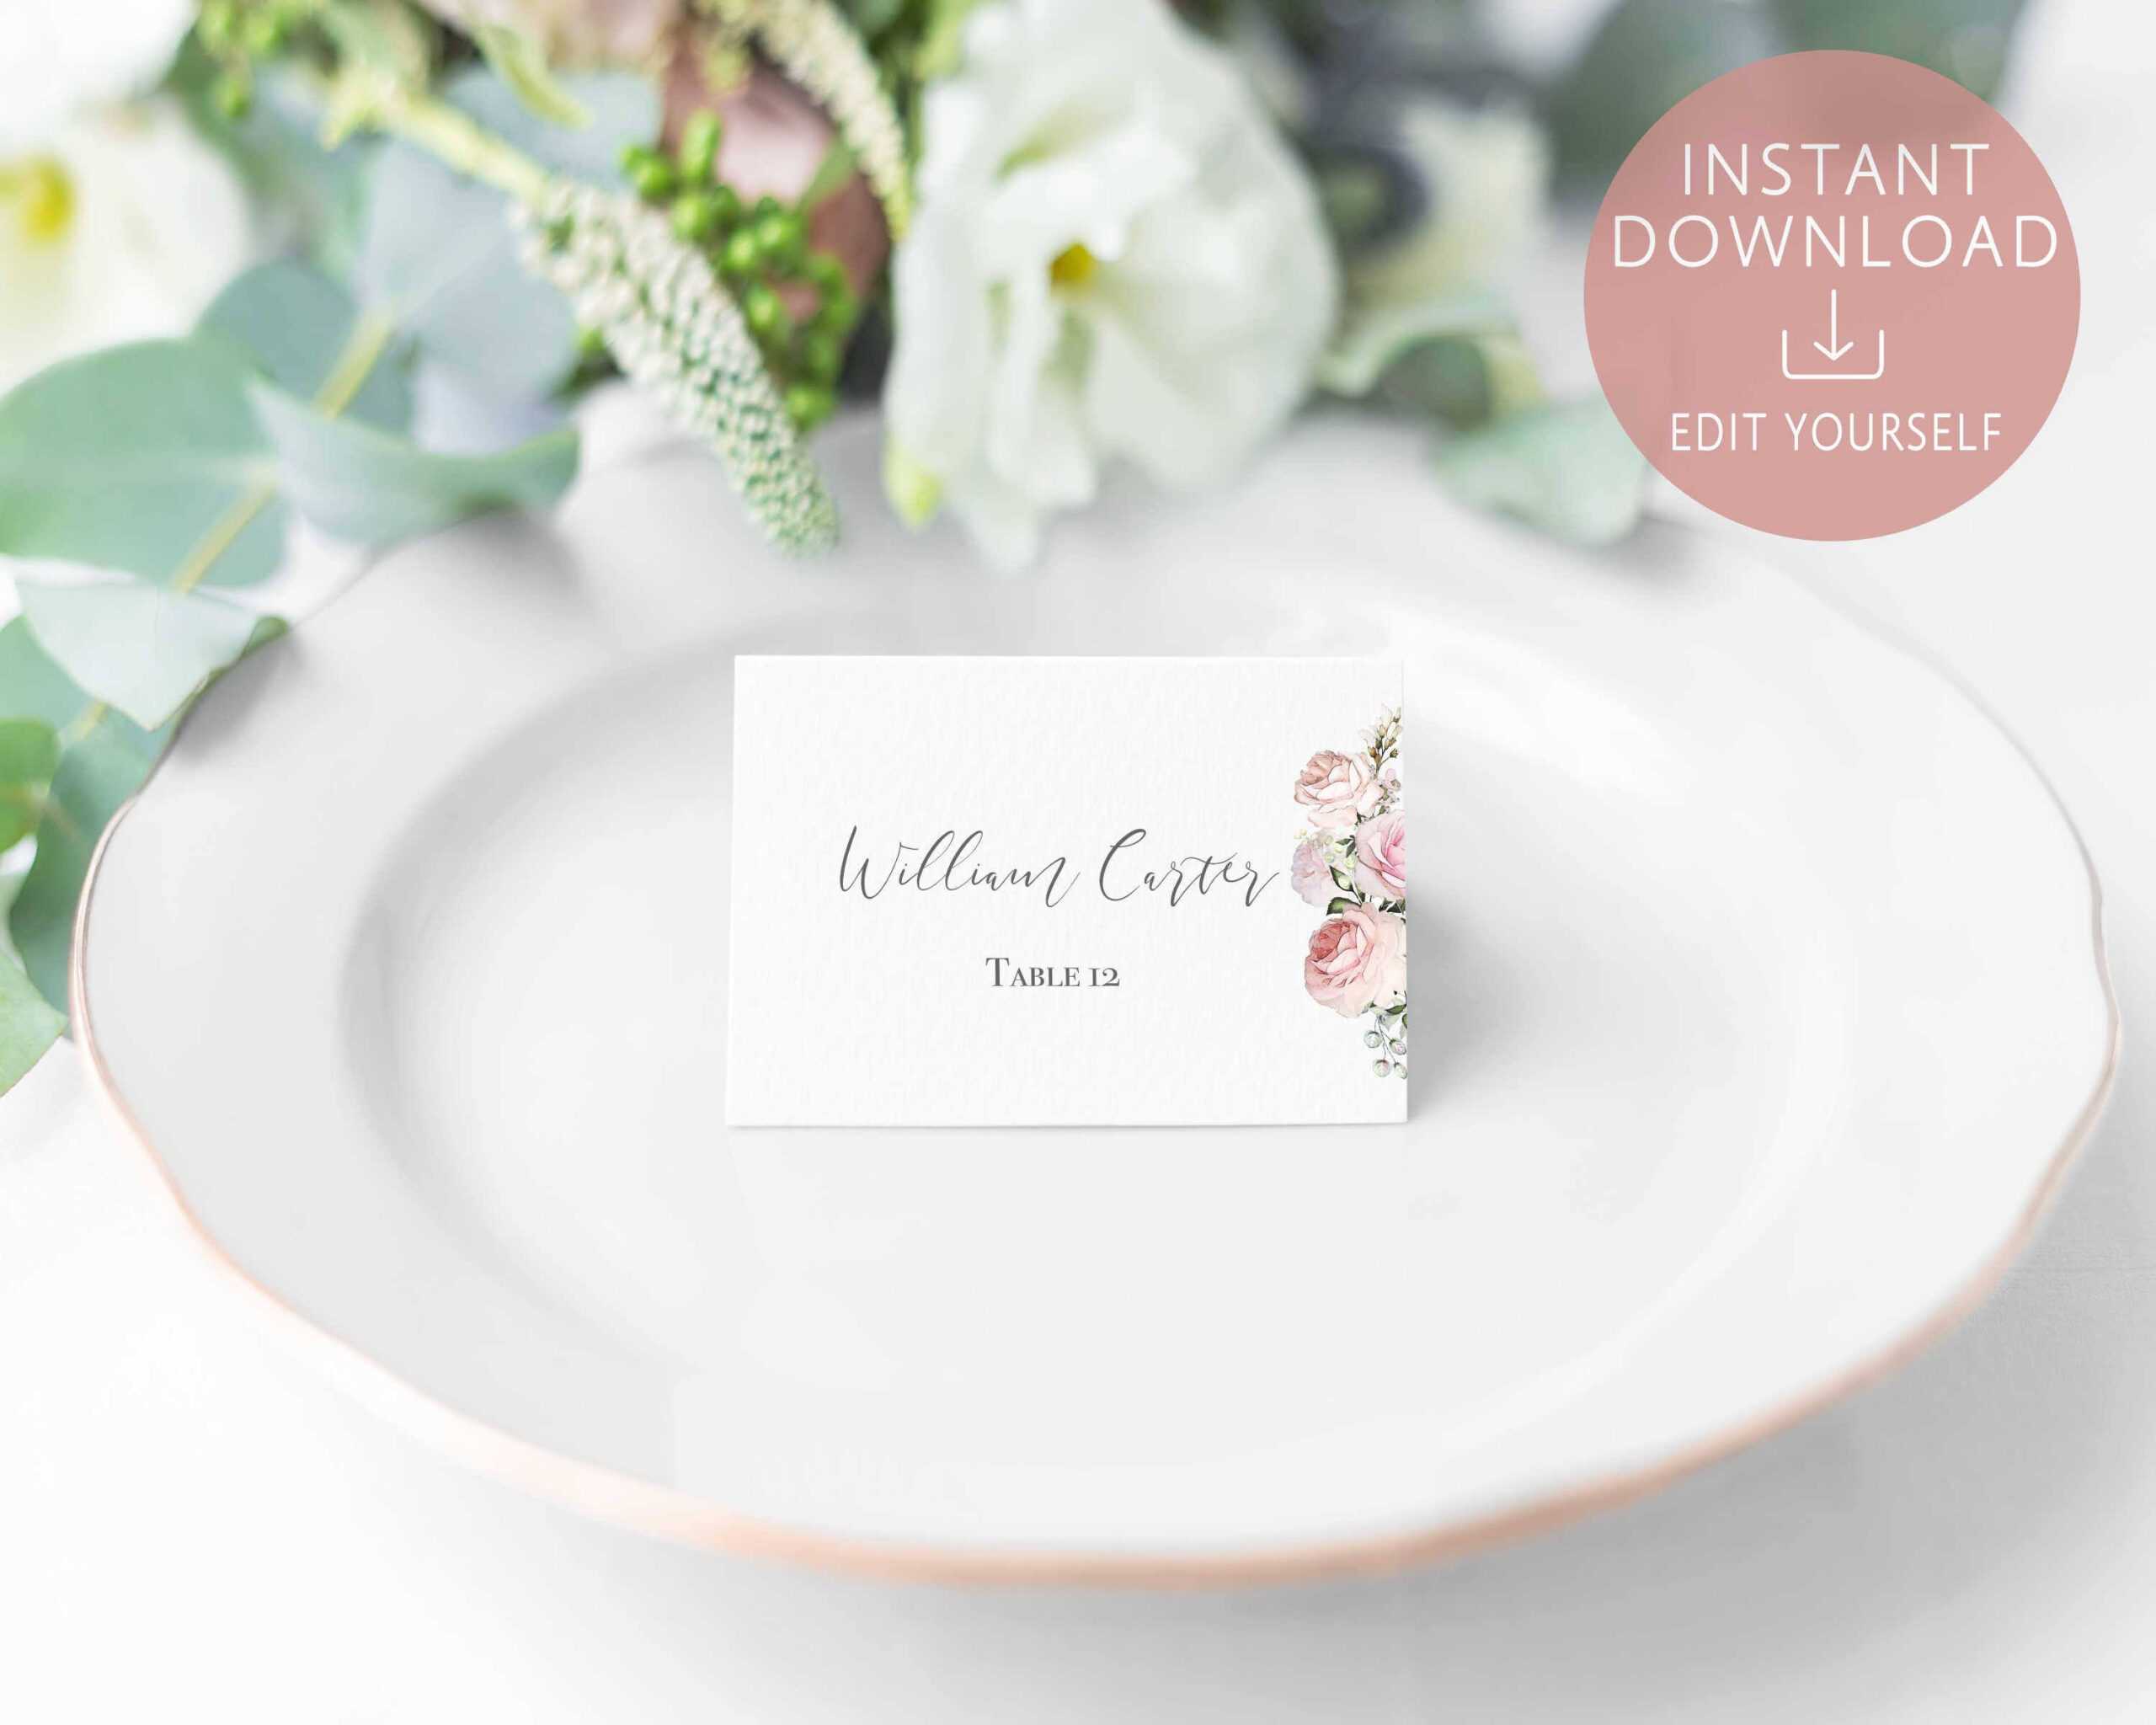 Wedding Place Cards Printable, Editable Name Card Template Intended For Table Name Card Template